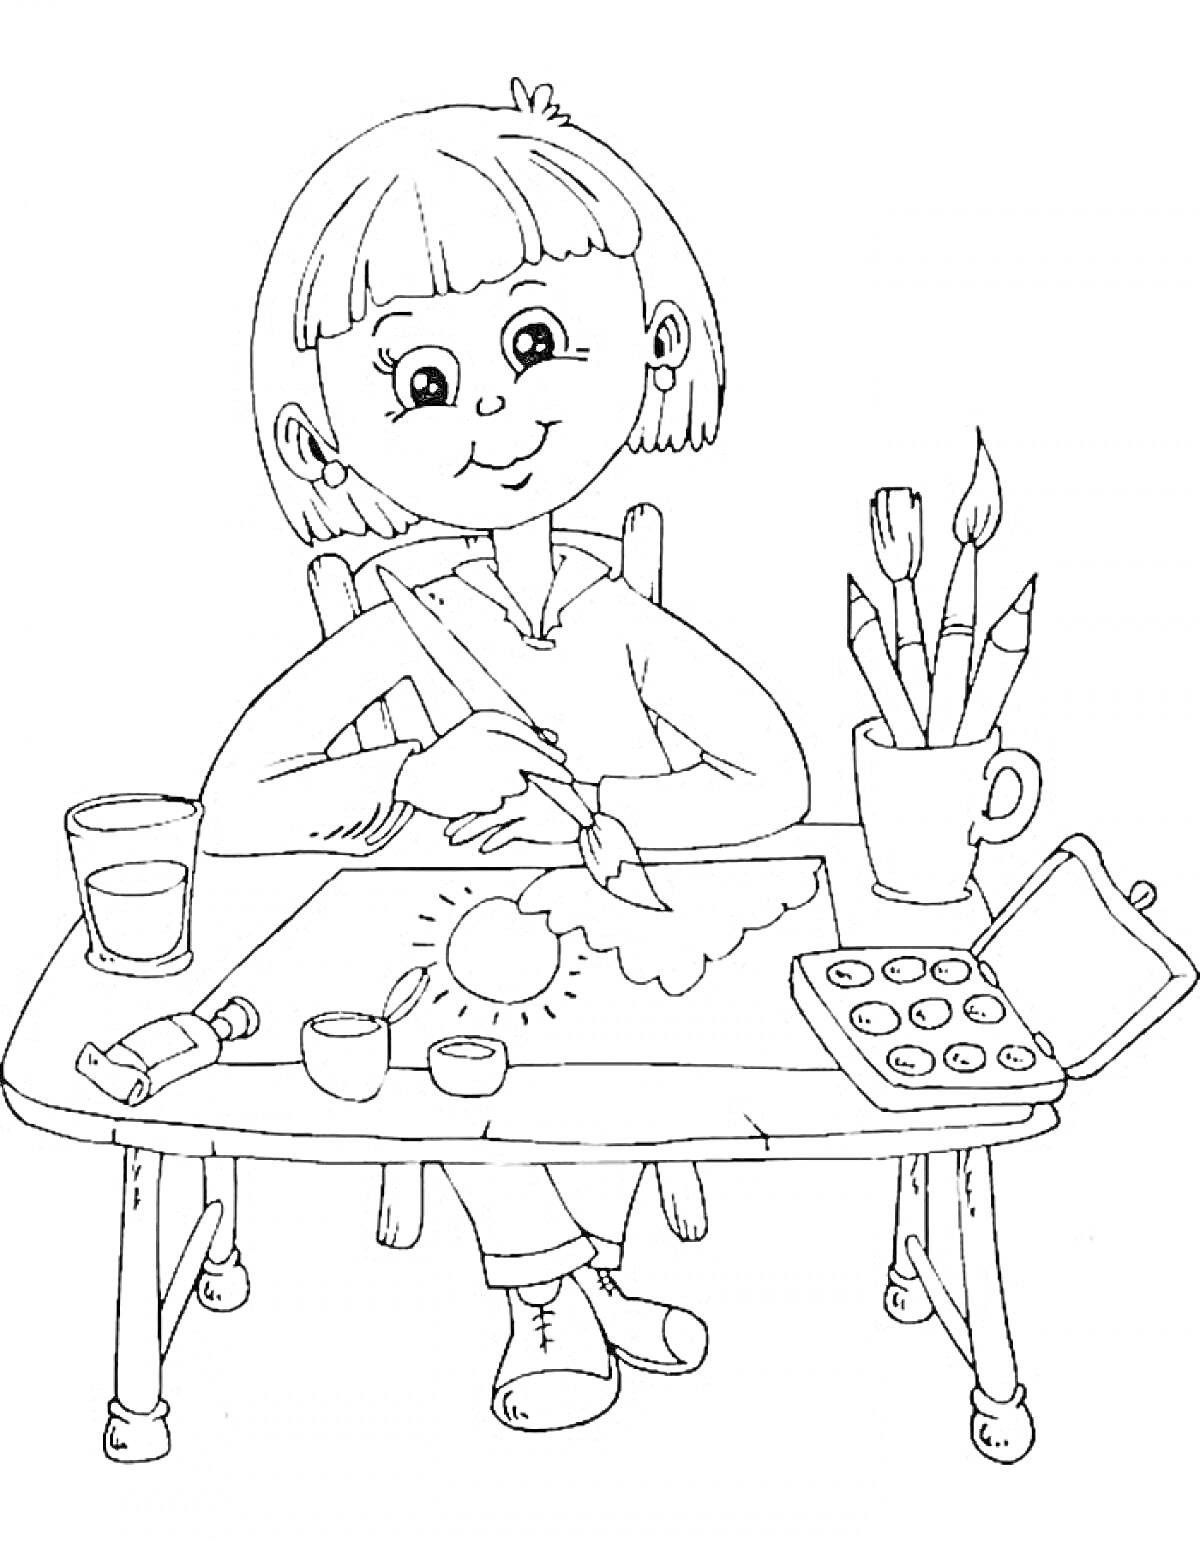 Раскраска Ребенок рисует на столе с карандашами, красками, кисточками и стаканом воды